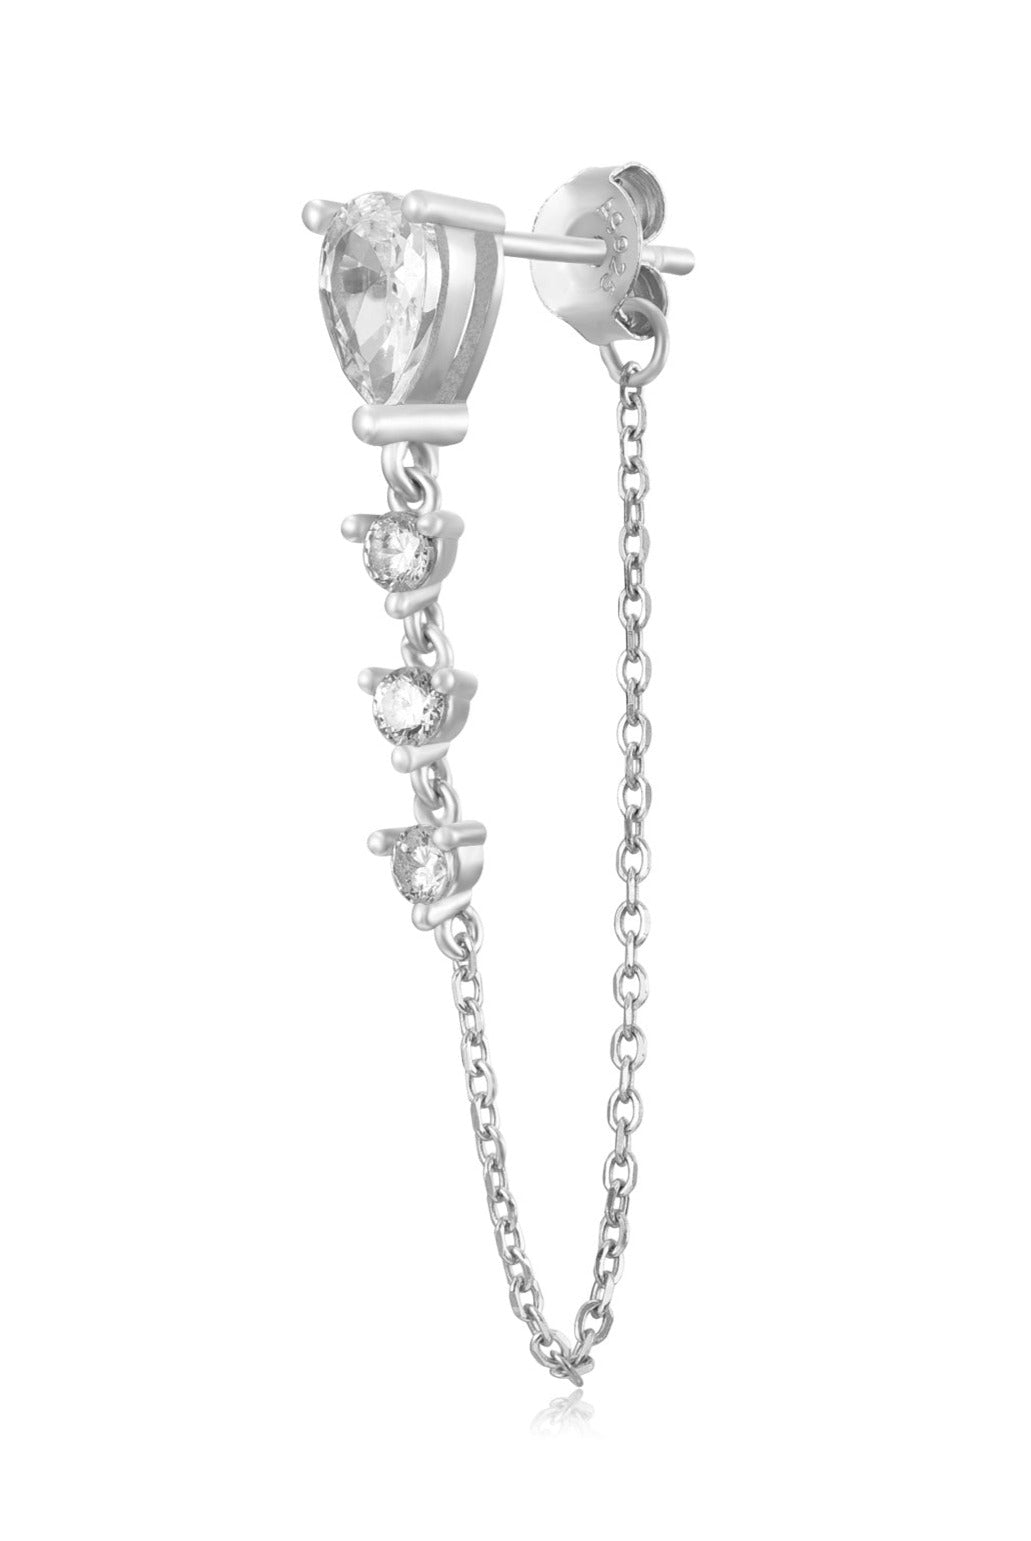 Le Marshand®  -  Joyería en plata 925, chapado en Oro 24K - Pendiente Alone 29 Ballerina (Plata 925) - Diseños propios - Brazaletes, pulseras, collares y pendientes - Joyería online - Mallorca